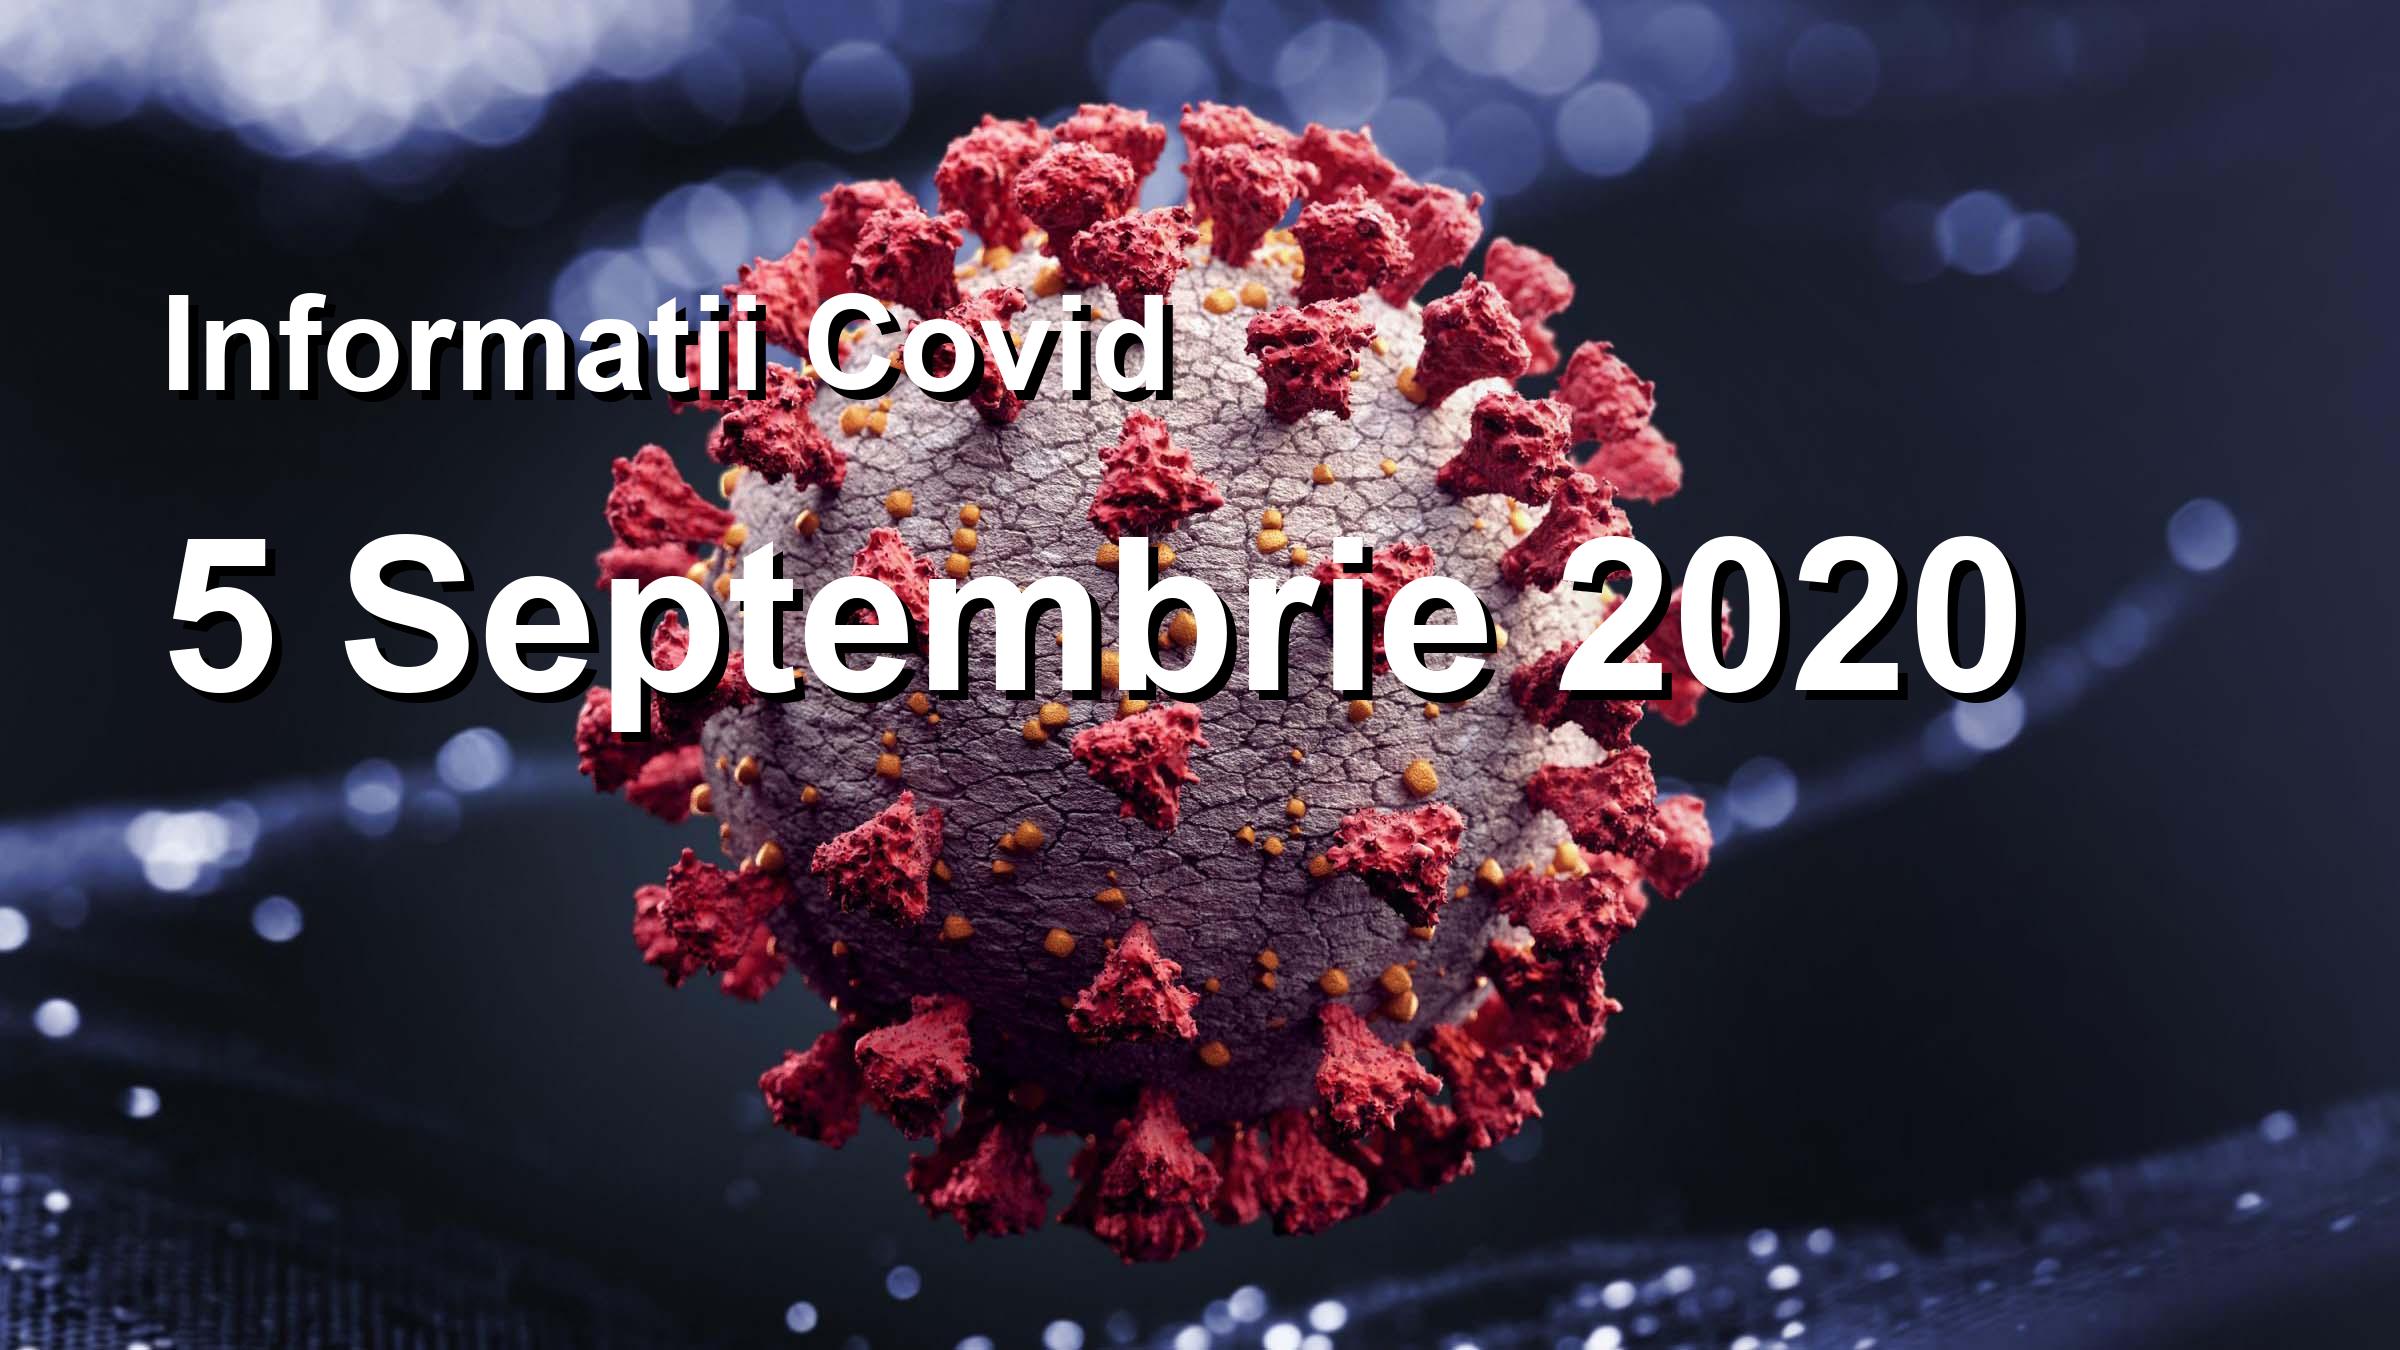 Informatii Covid-19 pentru 5 Septembrie 2020: 1269 infectari, 22380 teste. | Coronavirus Romania